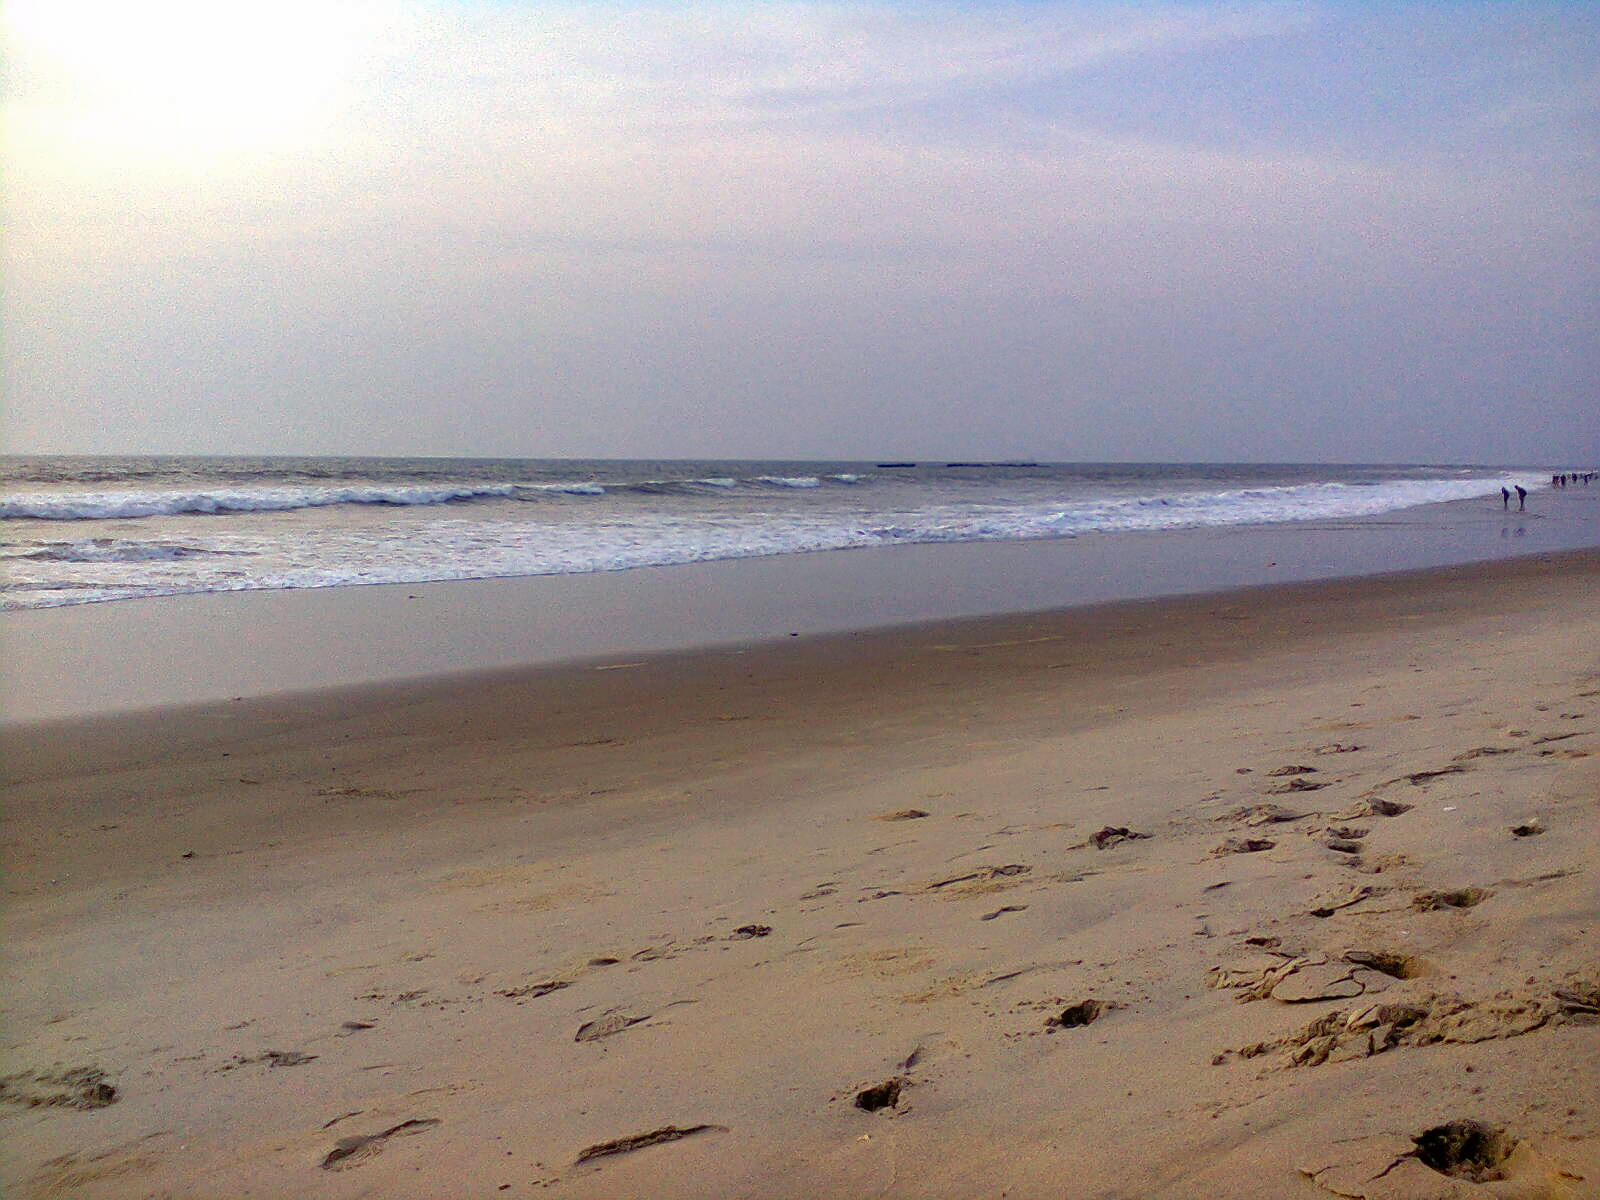 Tannirbhavi Beach